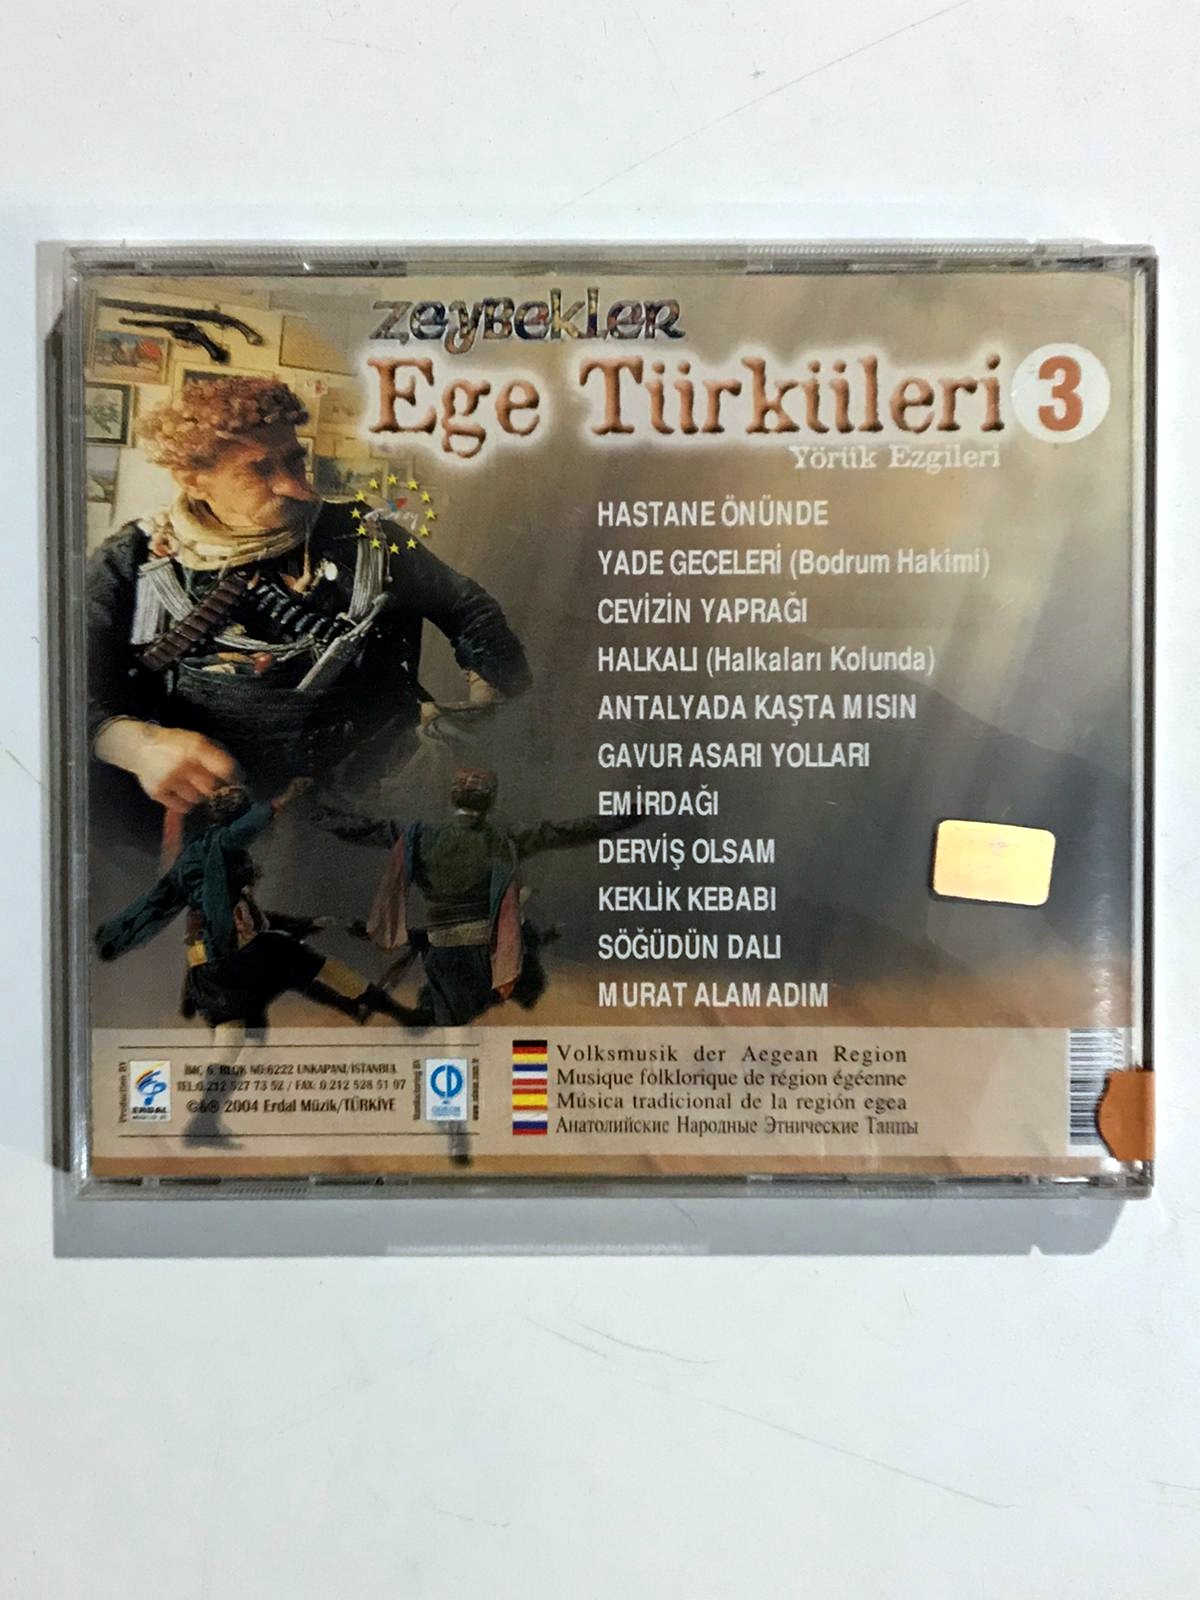 Ege Türküleri 3 / Zeybekler - Cd